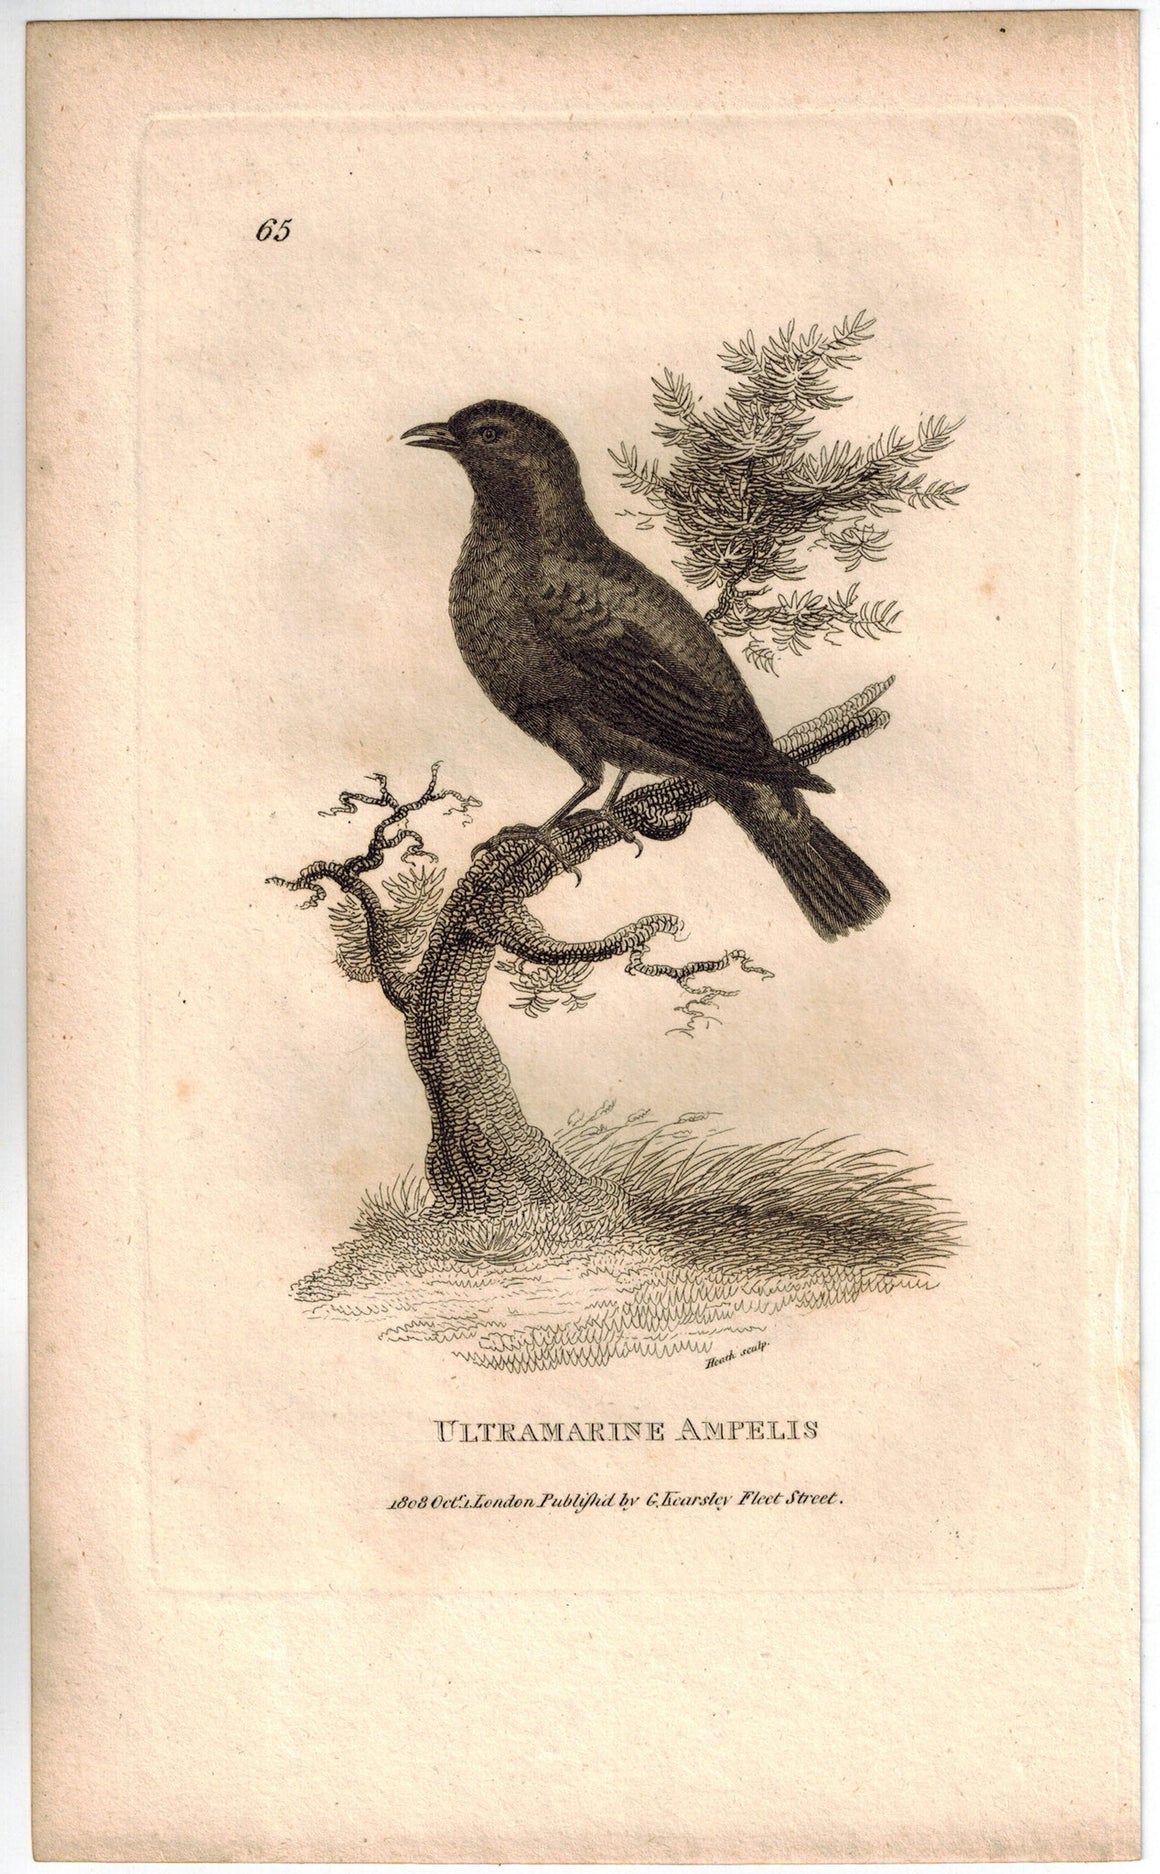 Ultramarine Ampelis Bird Print 1809 George Shaw Original Engraving